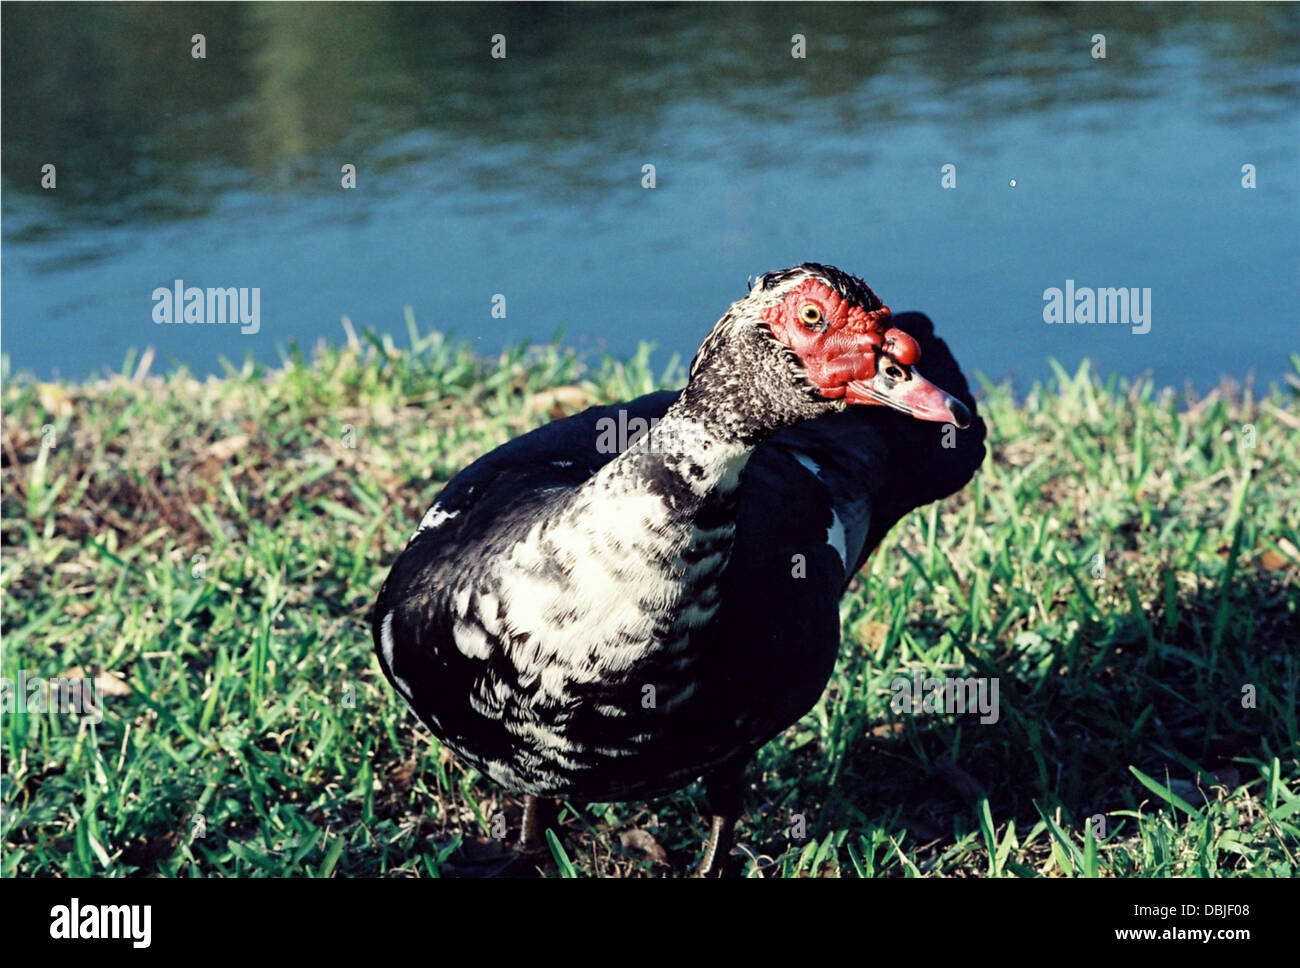 Barbarie-Ente, beobachtet die Kamera seitlich, am Ufer eines Teiches Florida Gemeinschaft. Stockfoto